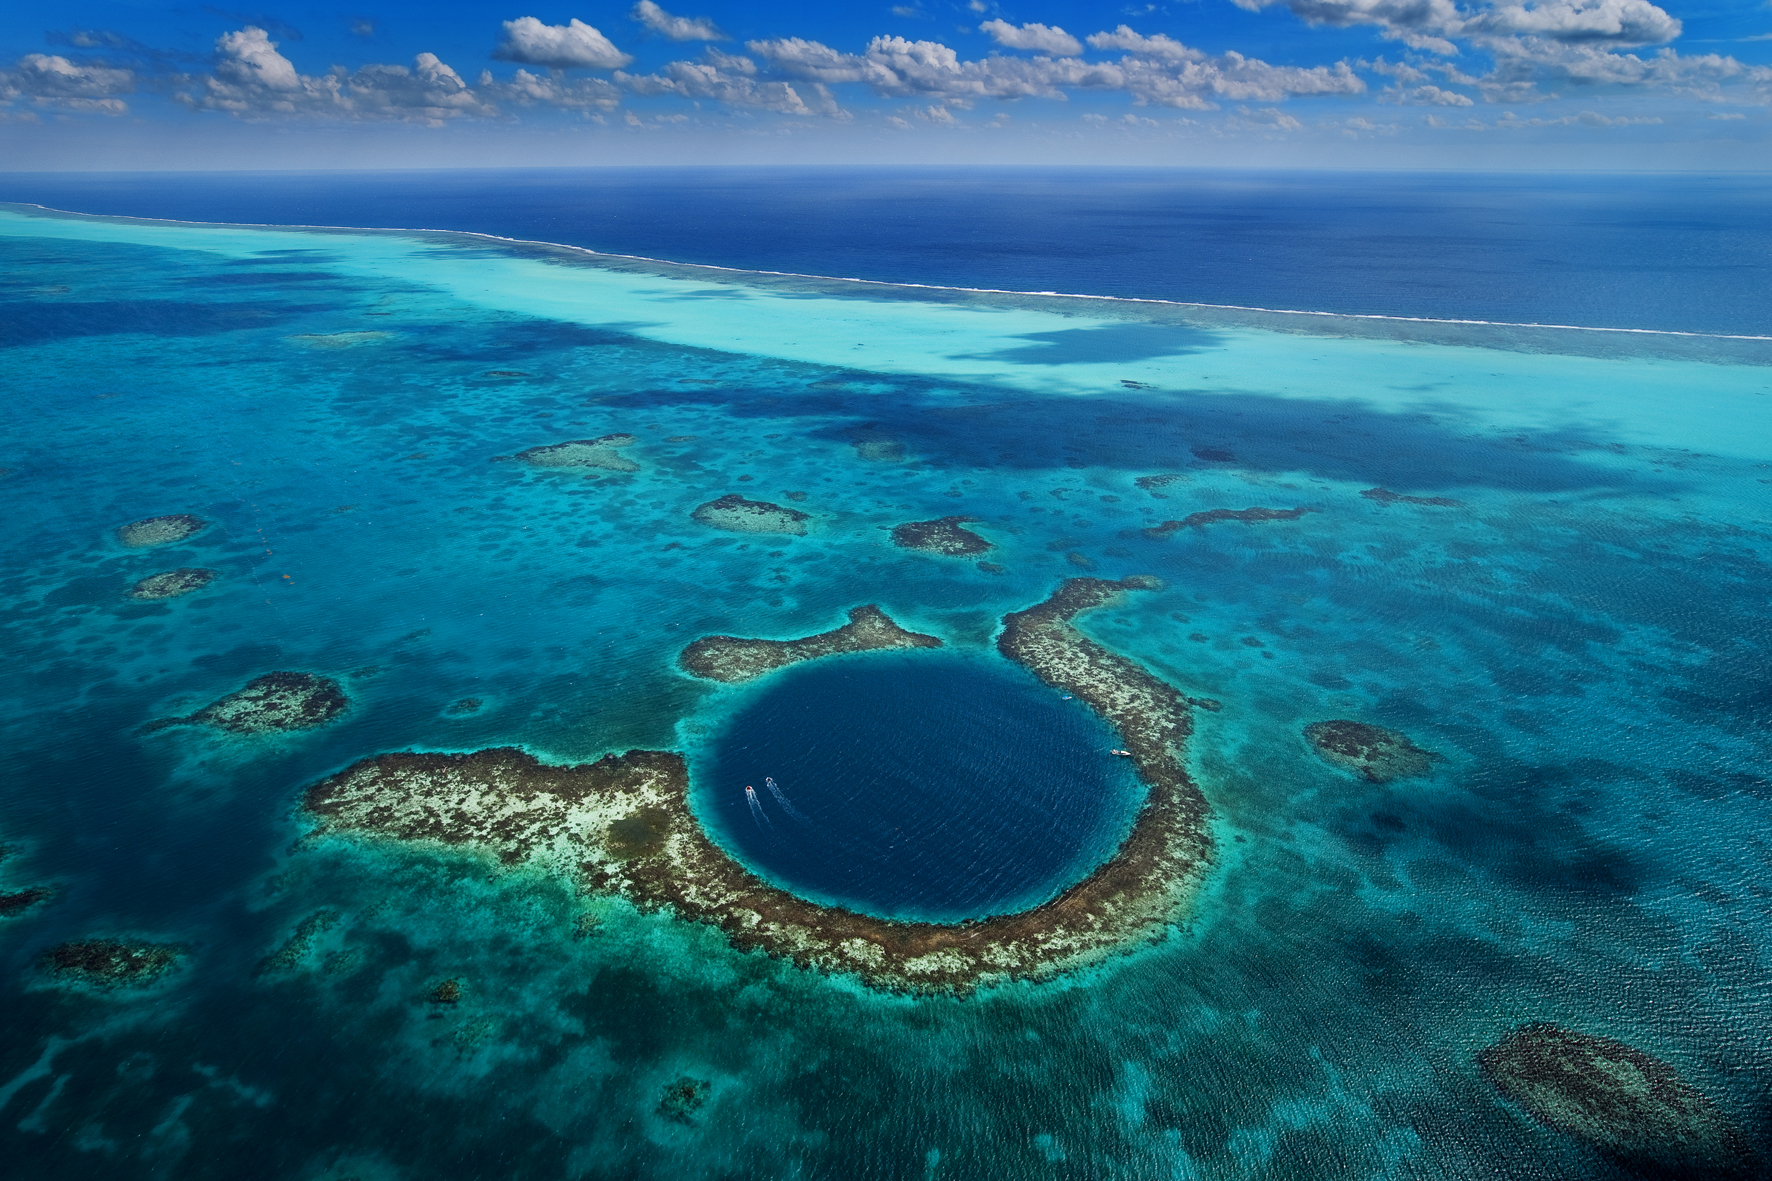 Condé Nast Traveler praises Belize's Blue Hole | Belize Travel Blog